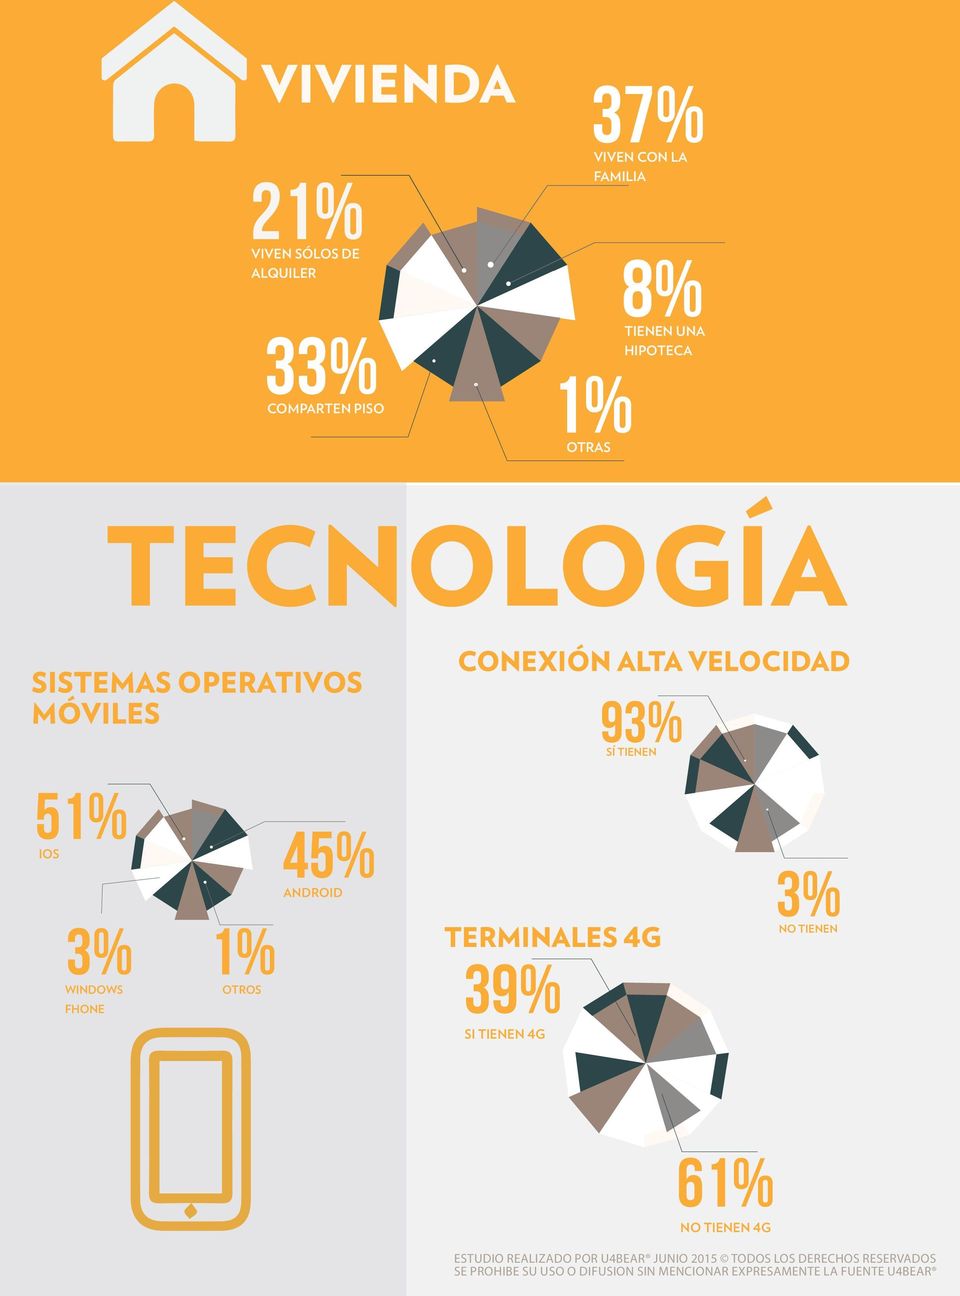 móviles Conexión alta velocidad 93% sí tienen 51% ios 45% android 3% 3% 1%